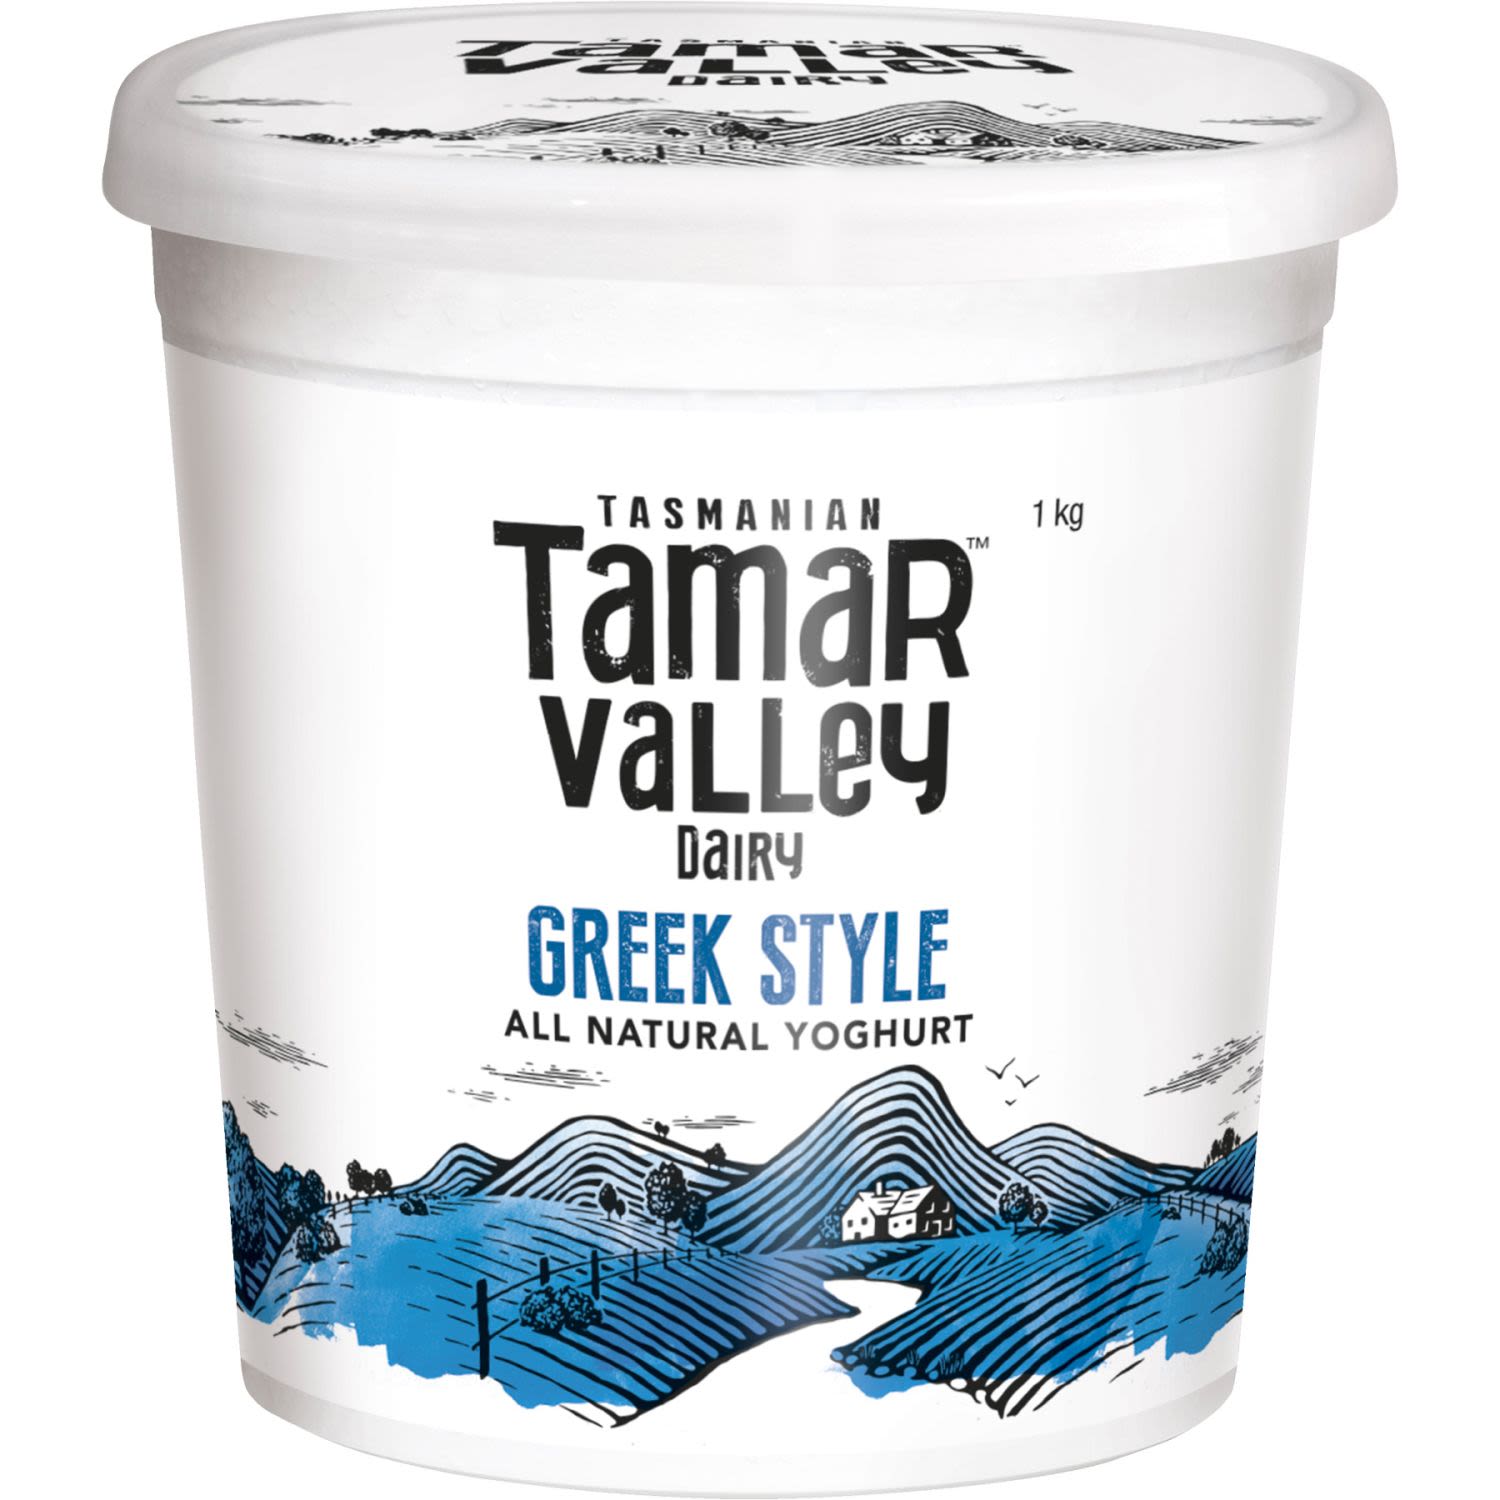 Tamar Valley Dairy Greek Style Yoghurt, 1 Kilogram